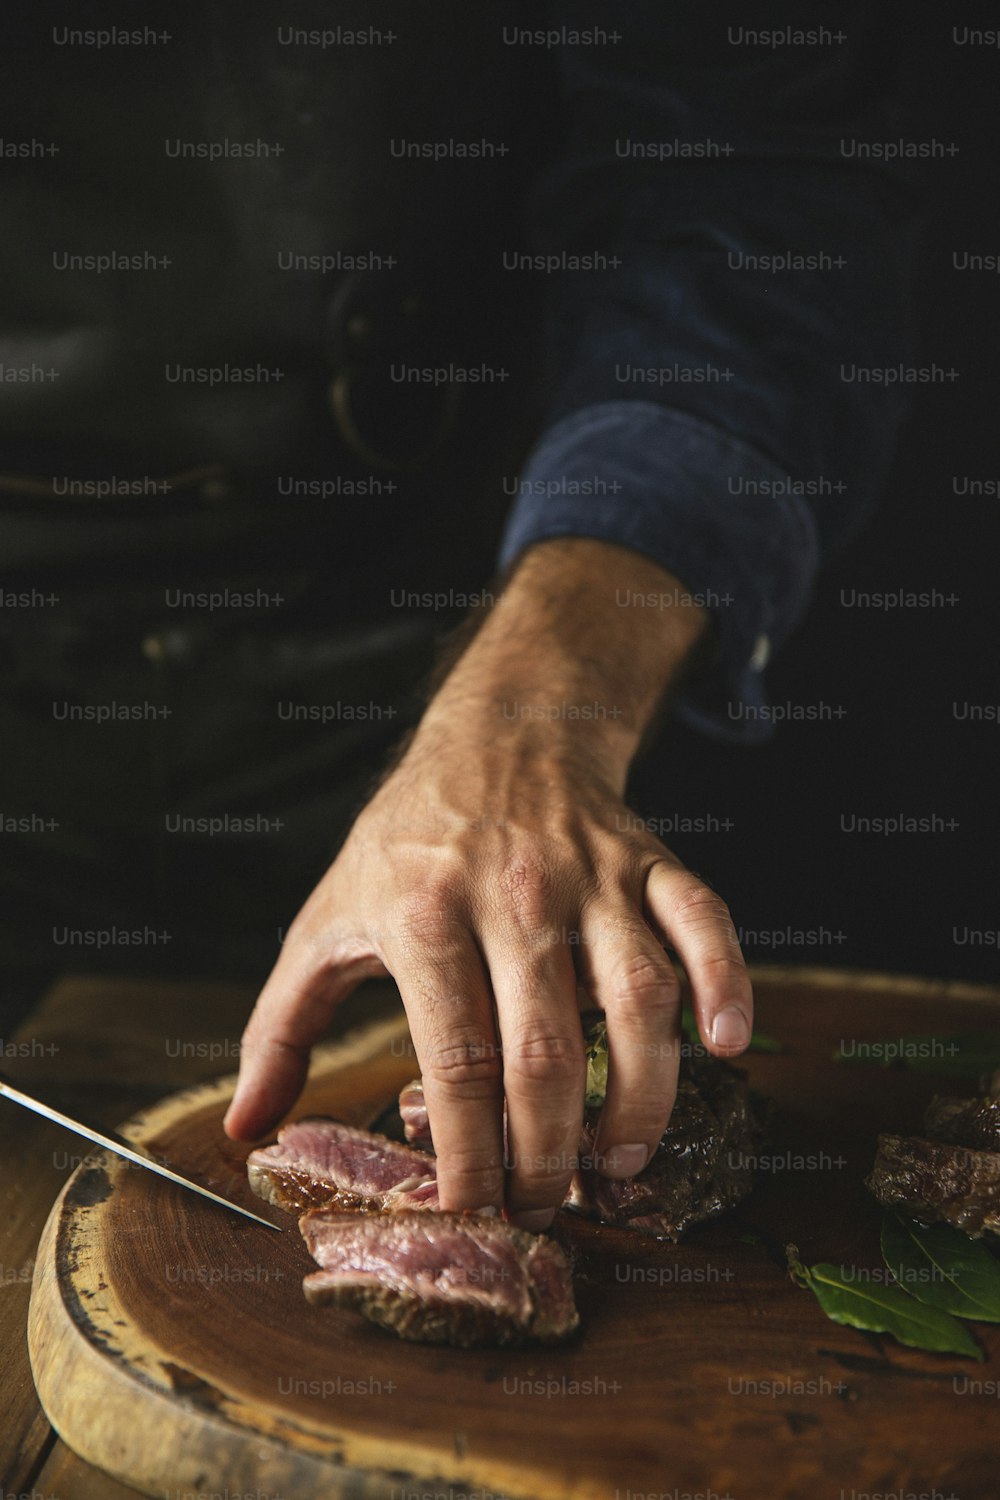 una persona cortando un trozo de carne encima de una tabla de cortar de madera